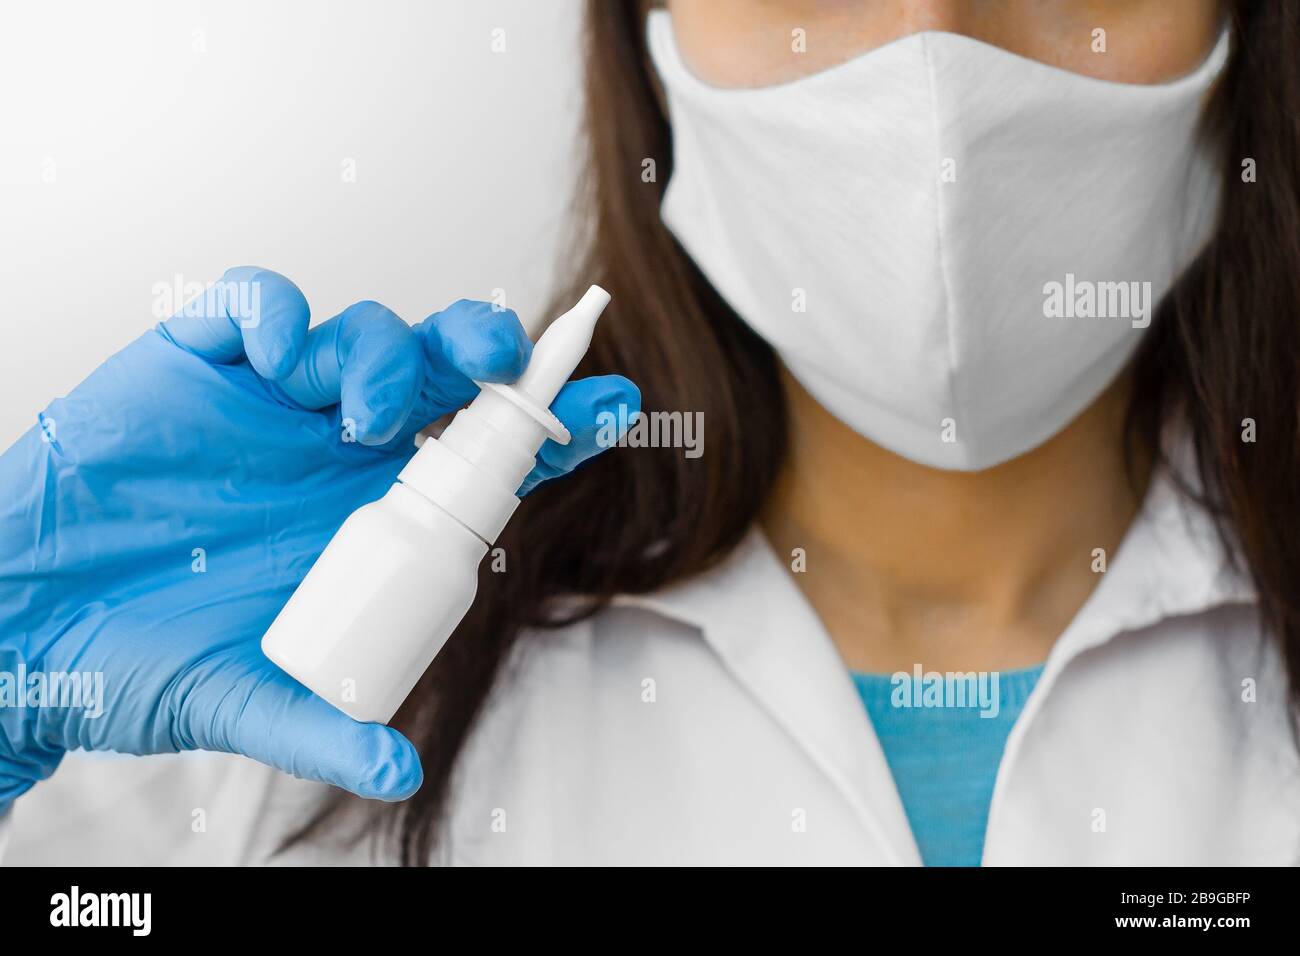 Une femme qui utilise un spray pour le traitement de la grippe ou le nez courant conserve des médicaments dans la main. Le médecin dans le masque de protection et les gants bleus montre un jet de nez pendant Banque D'Images